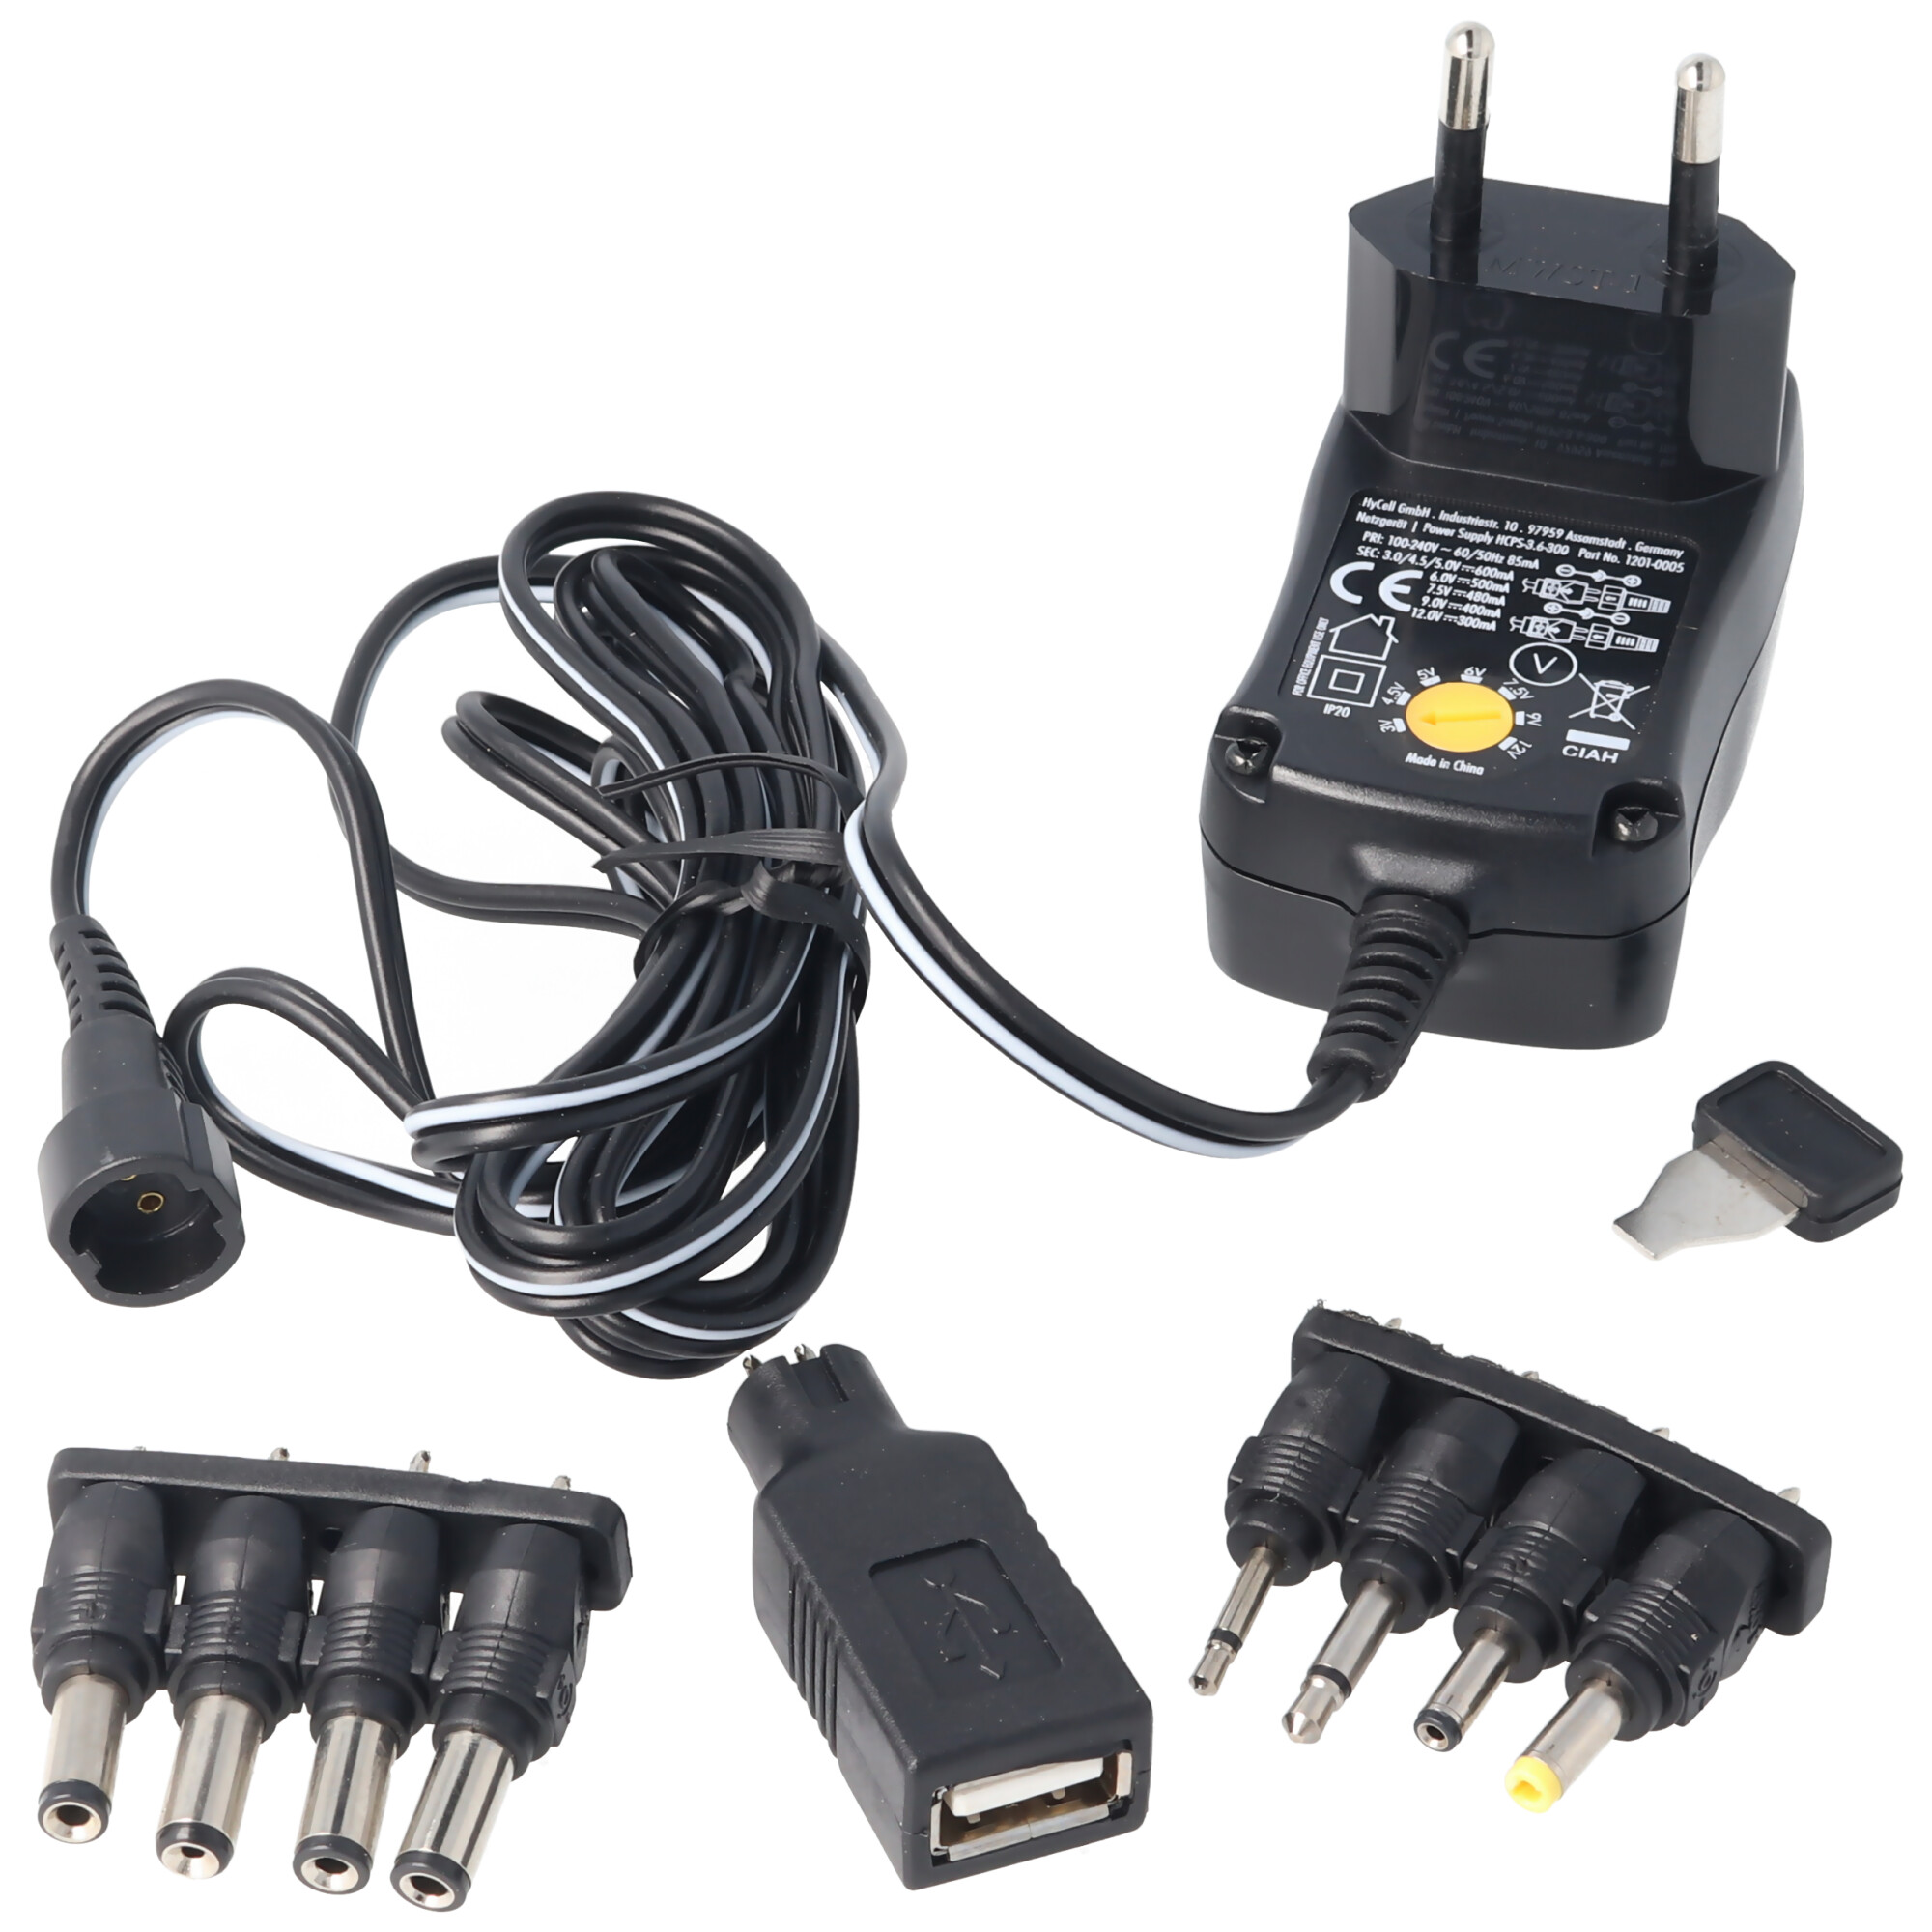 3 Volt bis 12 Volt Universal-Netzteil inklusive 1 USB- und 8 DC-Adaptern, max. 3,6 W und 0,3A